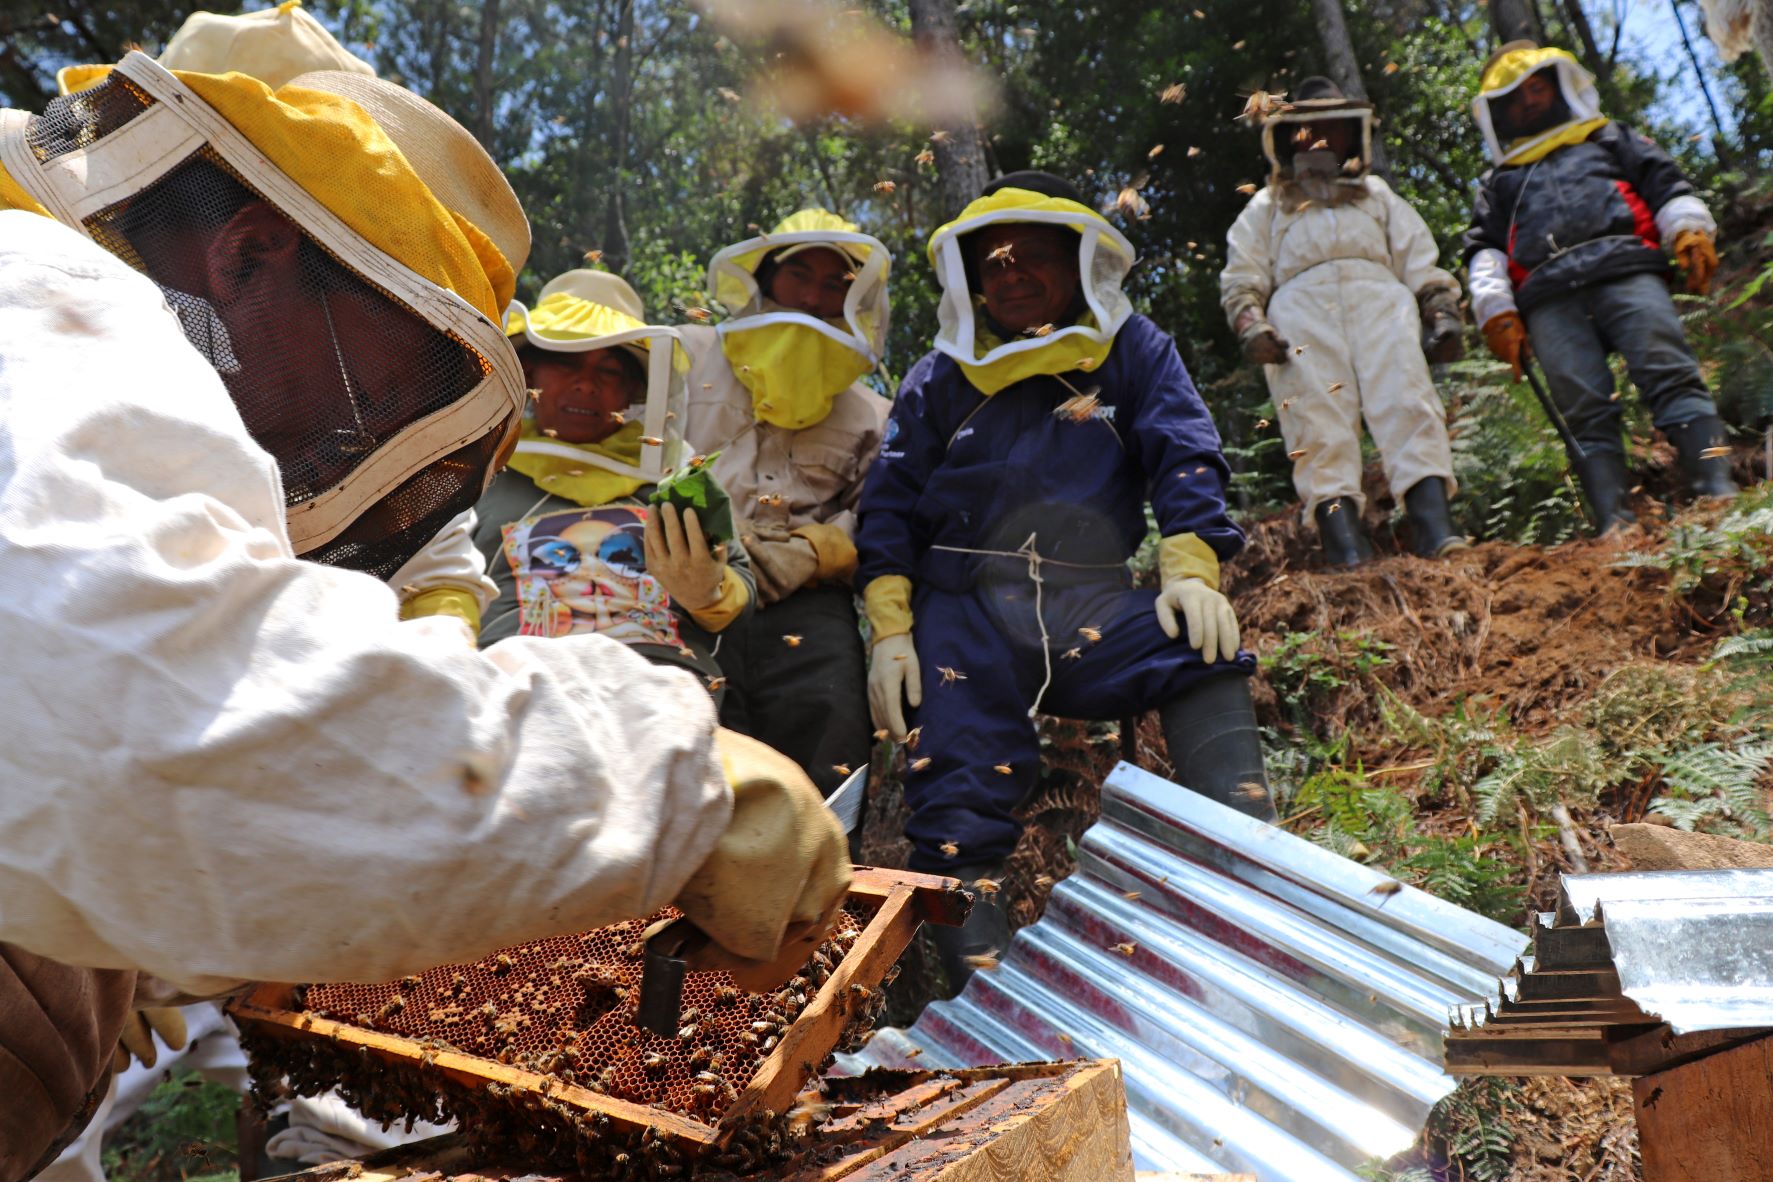 Un proyecto de USAID en el que apoya a apicultores del altiplano guatemalteco. (Foto: Usaid)